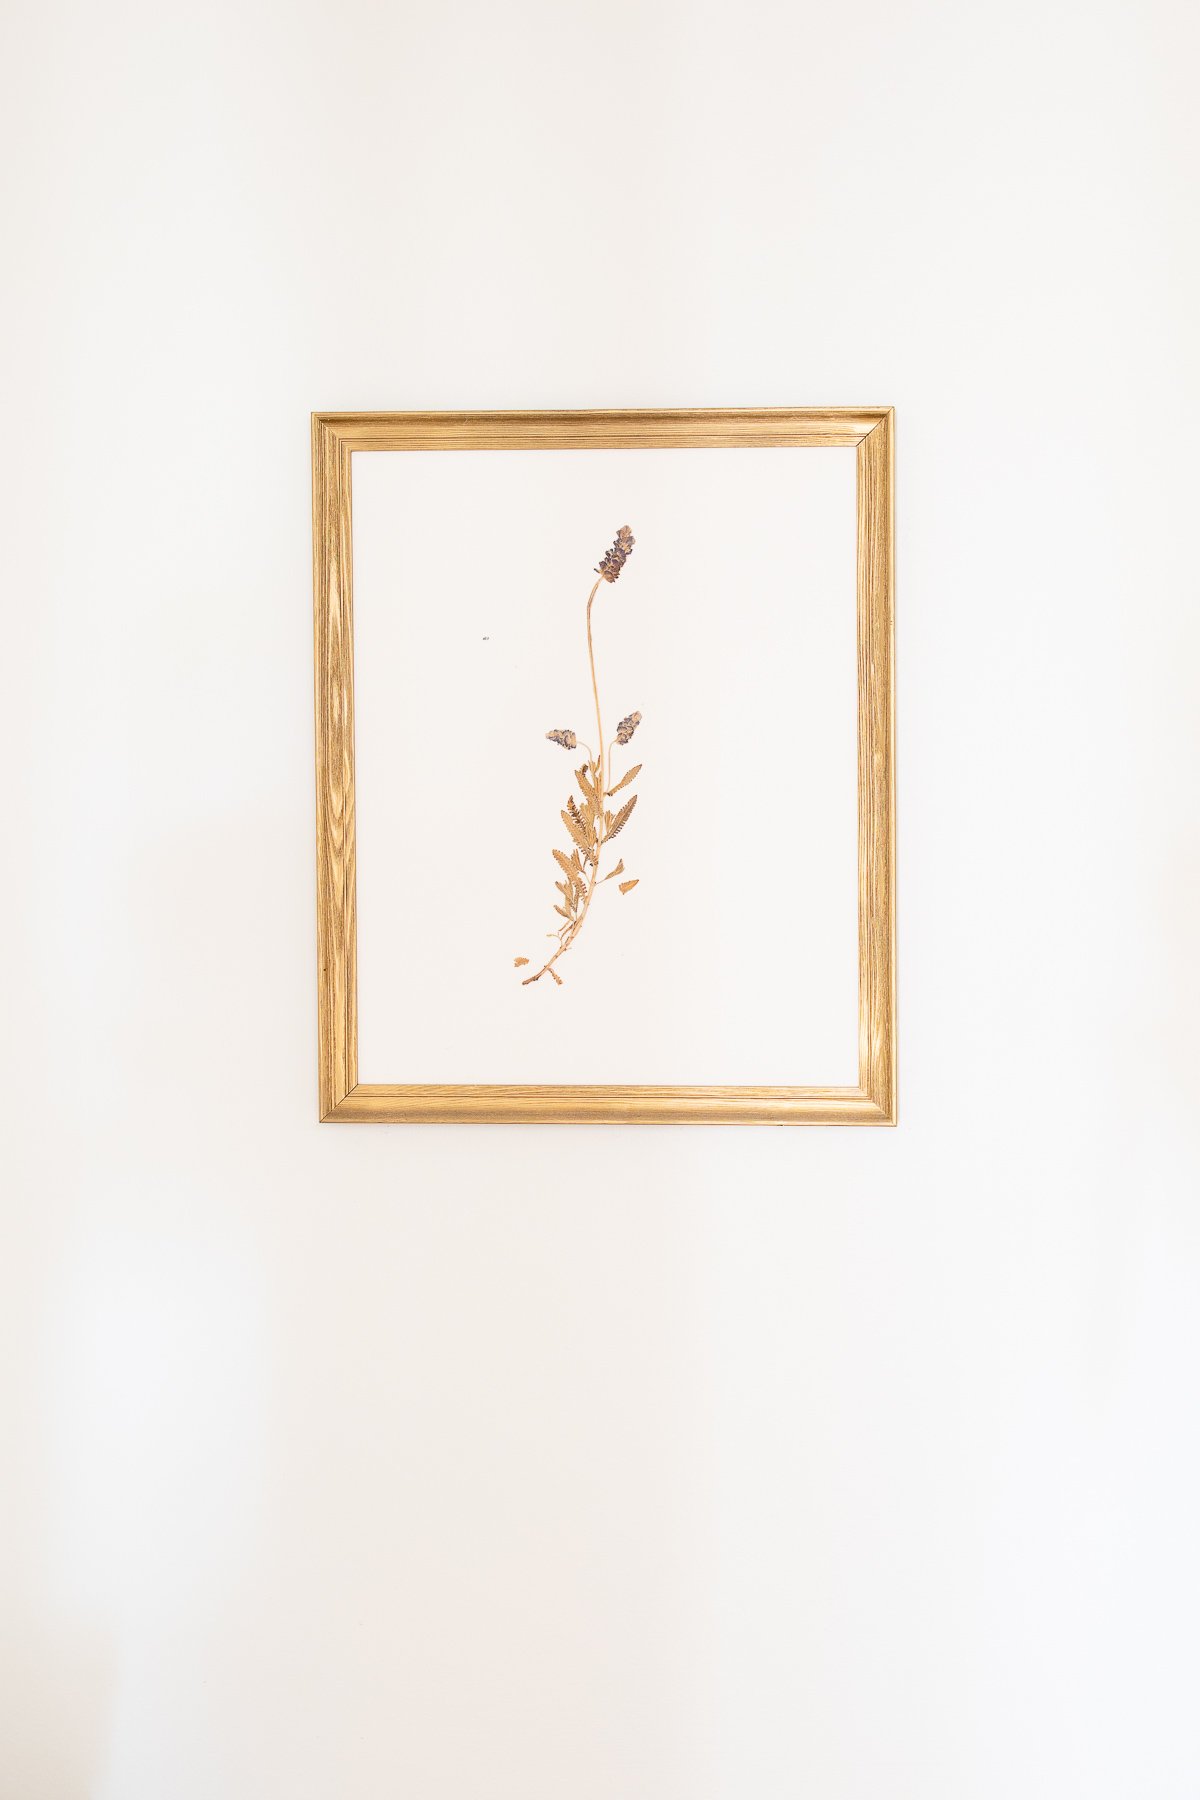 A gold framed wall art print of a flower.